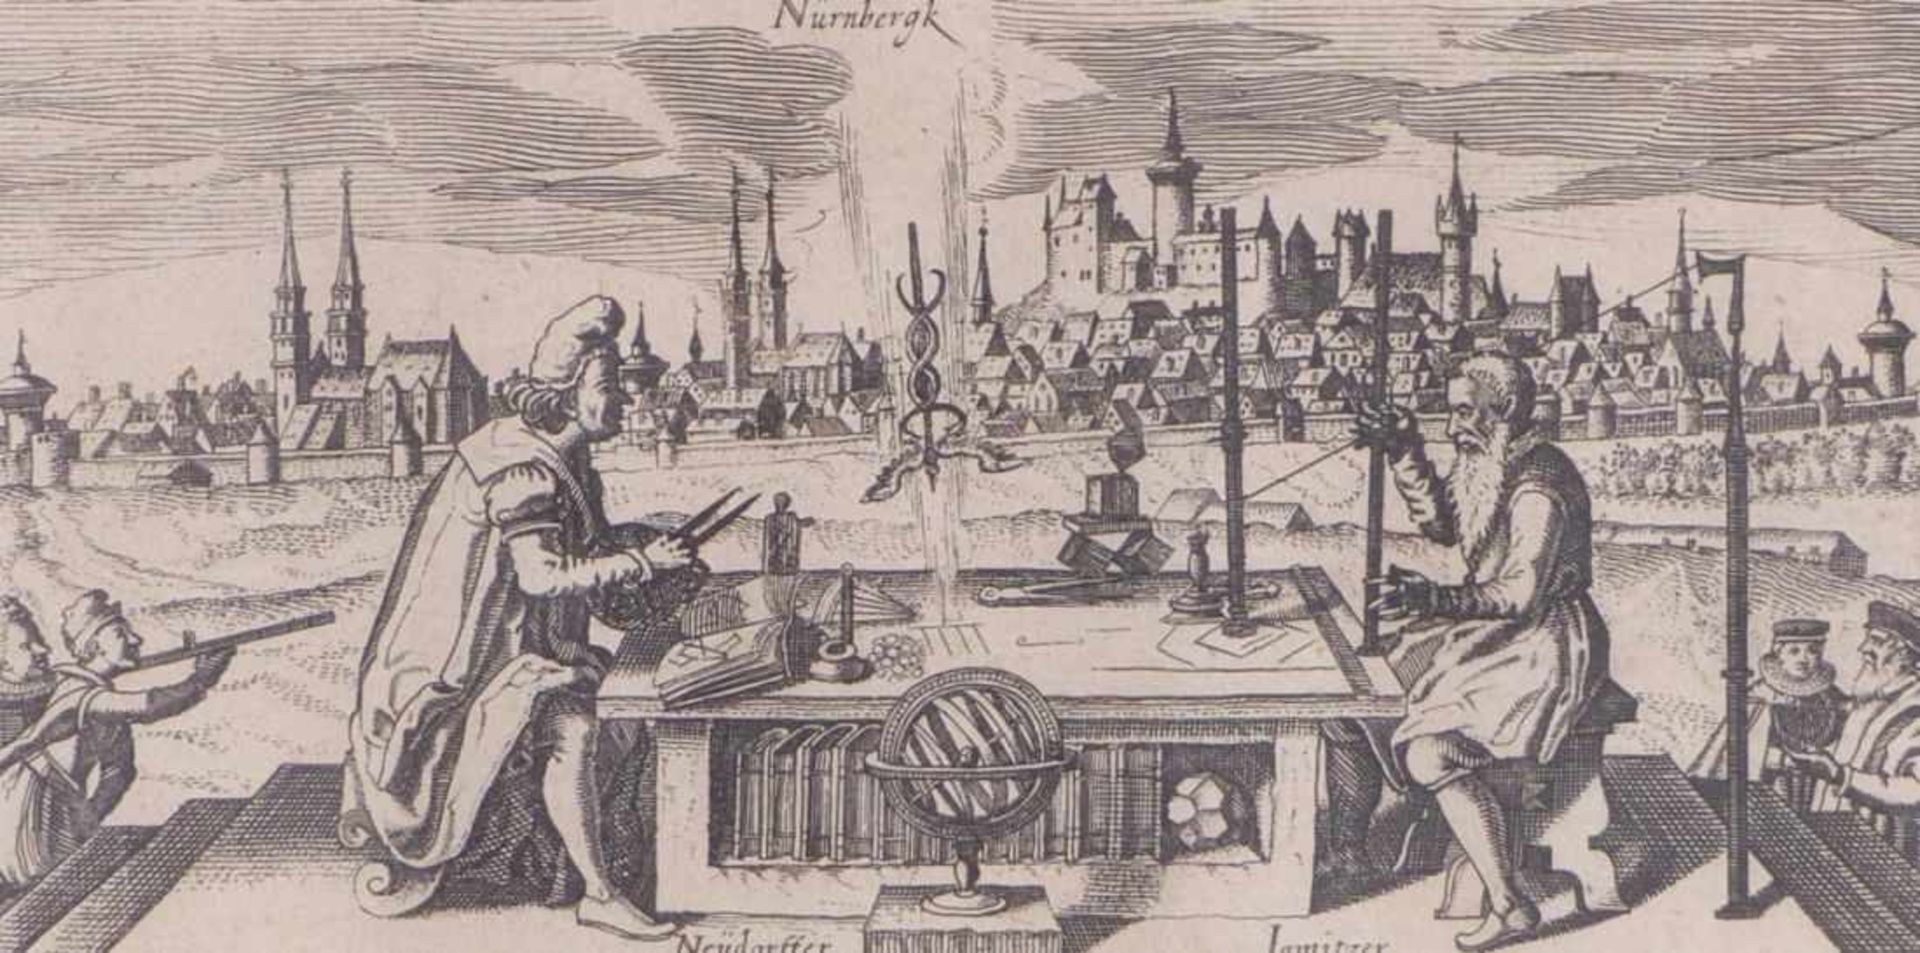 Meisner, Daniel''Nil Melius Arte'' - View of Nuremberg(Komotau 1585-1625 Frankfurt am Main)